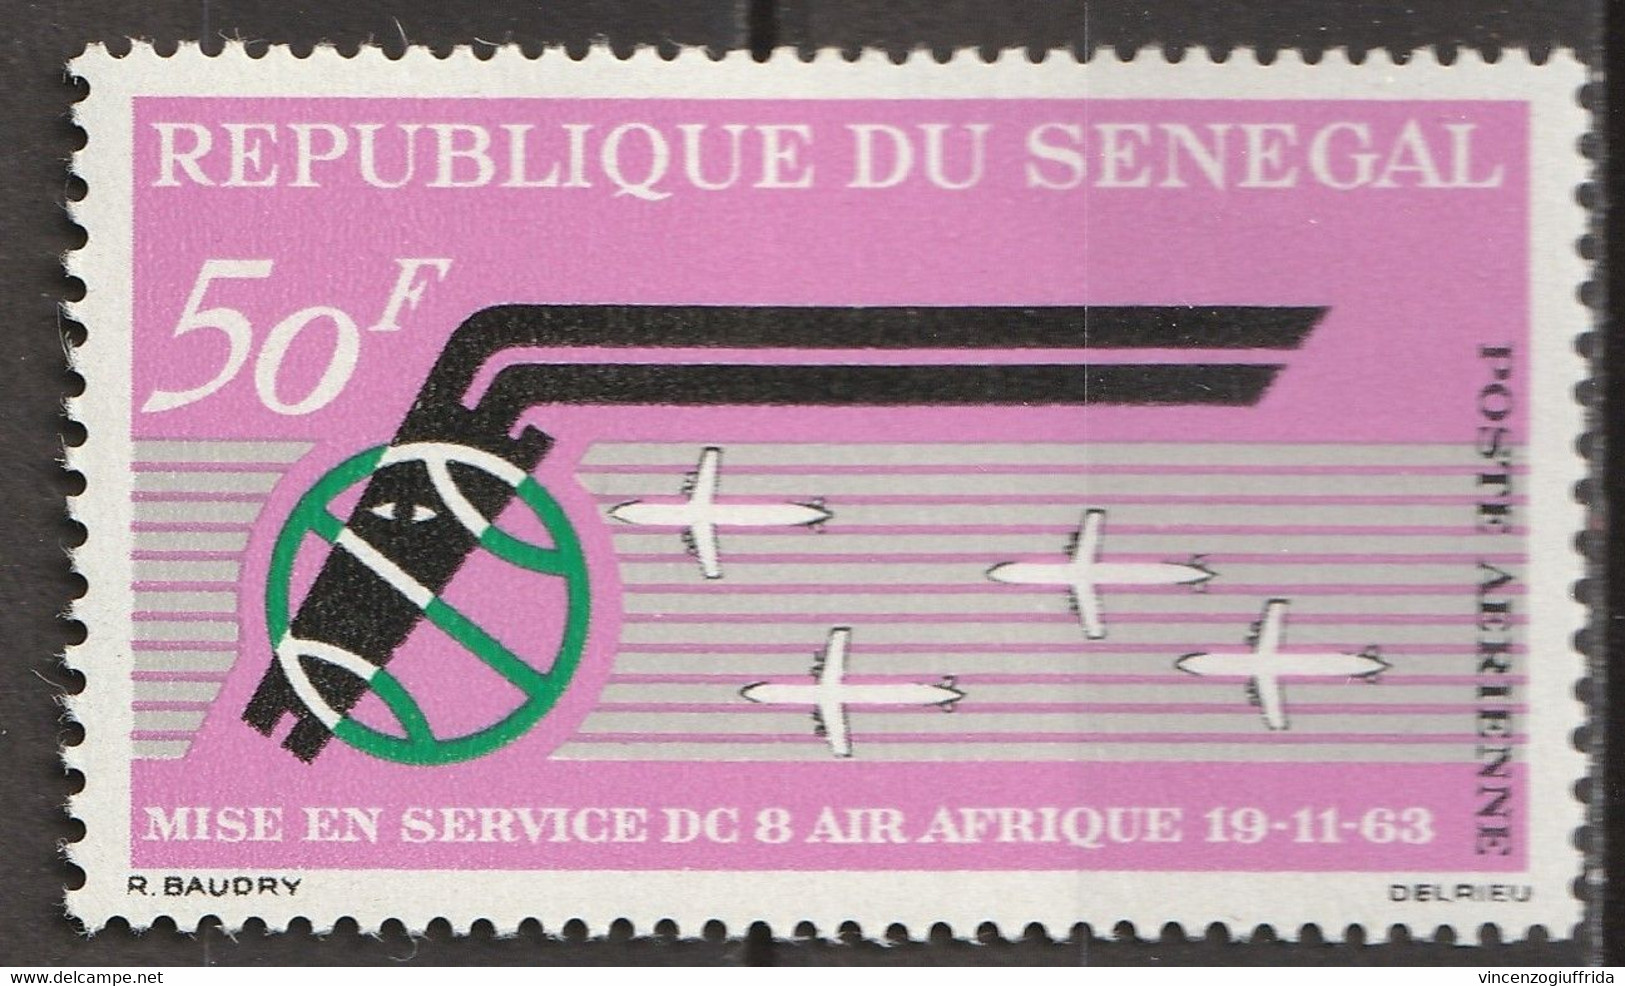 Republique Du Senegal 1963 Posta Aerea - Il 1°anniversario Dell'inaugurazione Del Servizio "Air Afrique" E "DC-8" MNH** - Collections